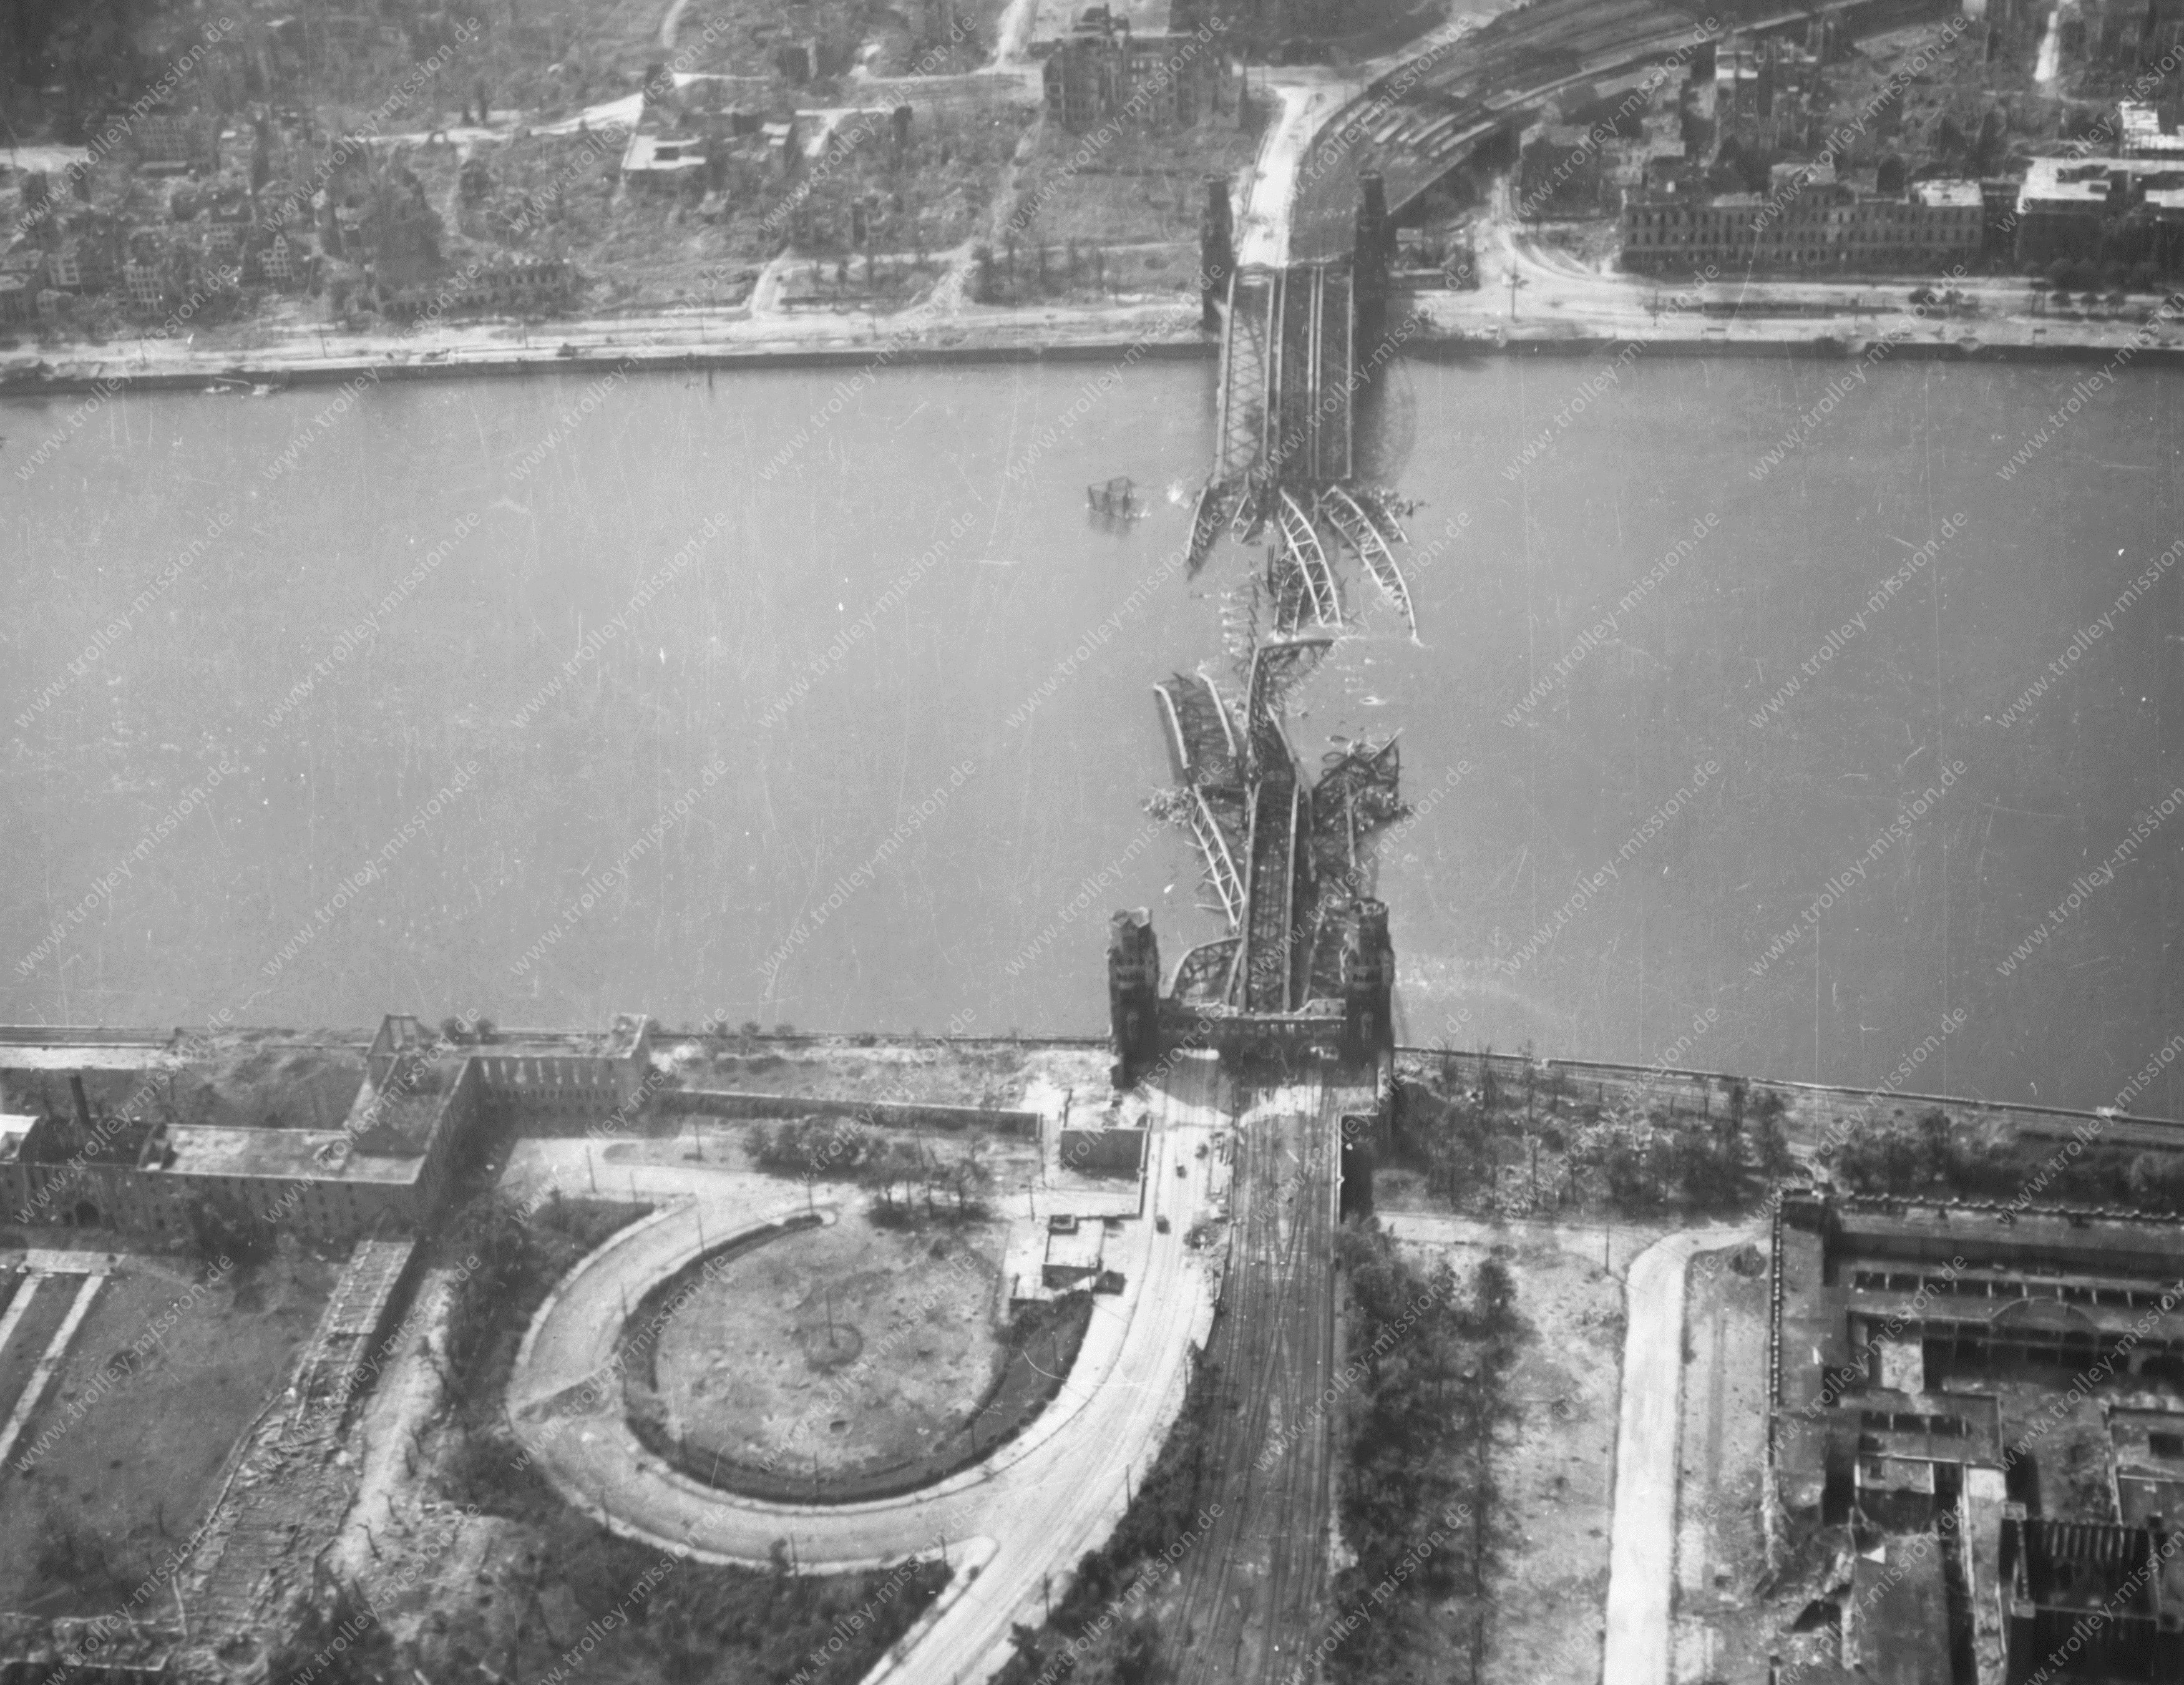 Luftbild aus dem Zweiten Weltkrieg - Zerstörte Hohenzollernbrücke in Köln am alten Deutzer Ufer